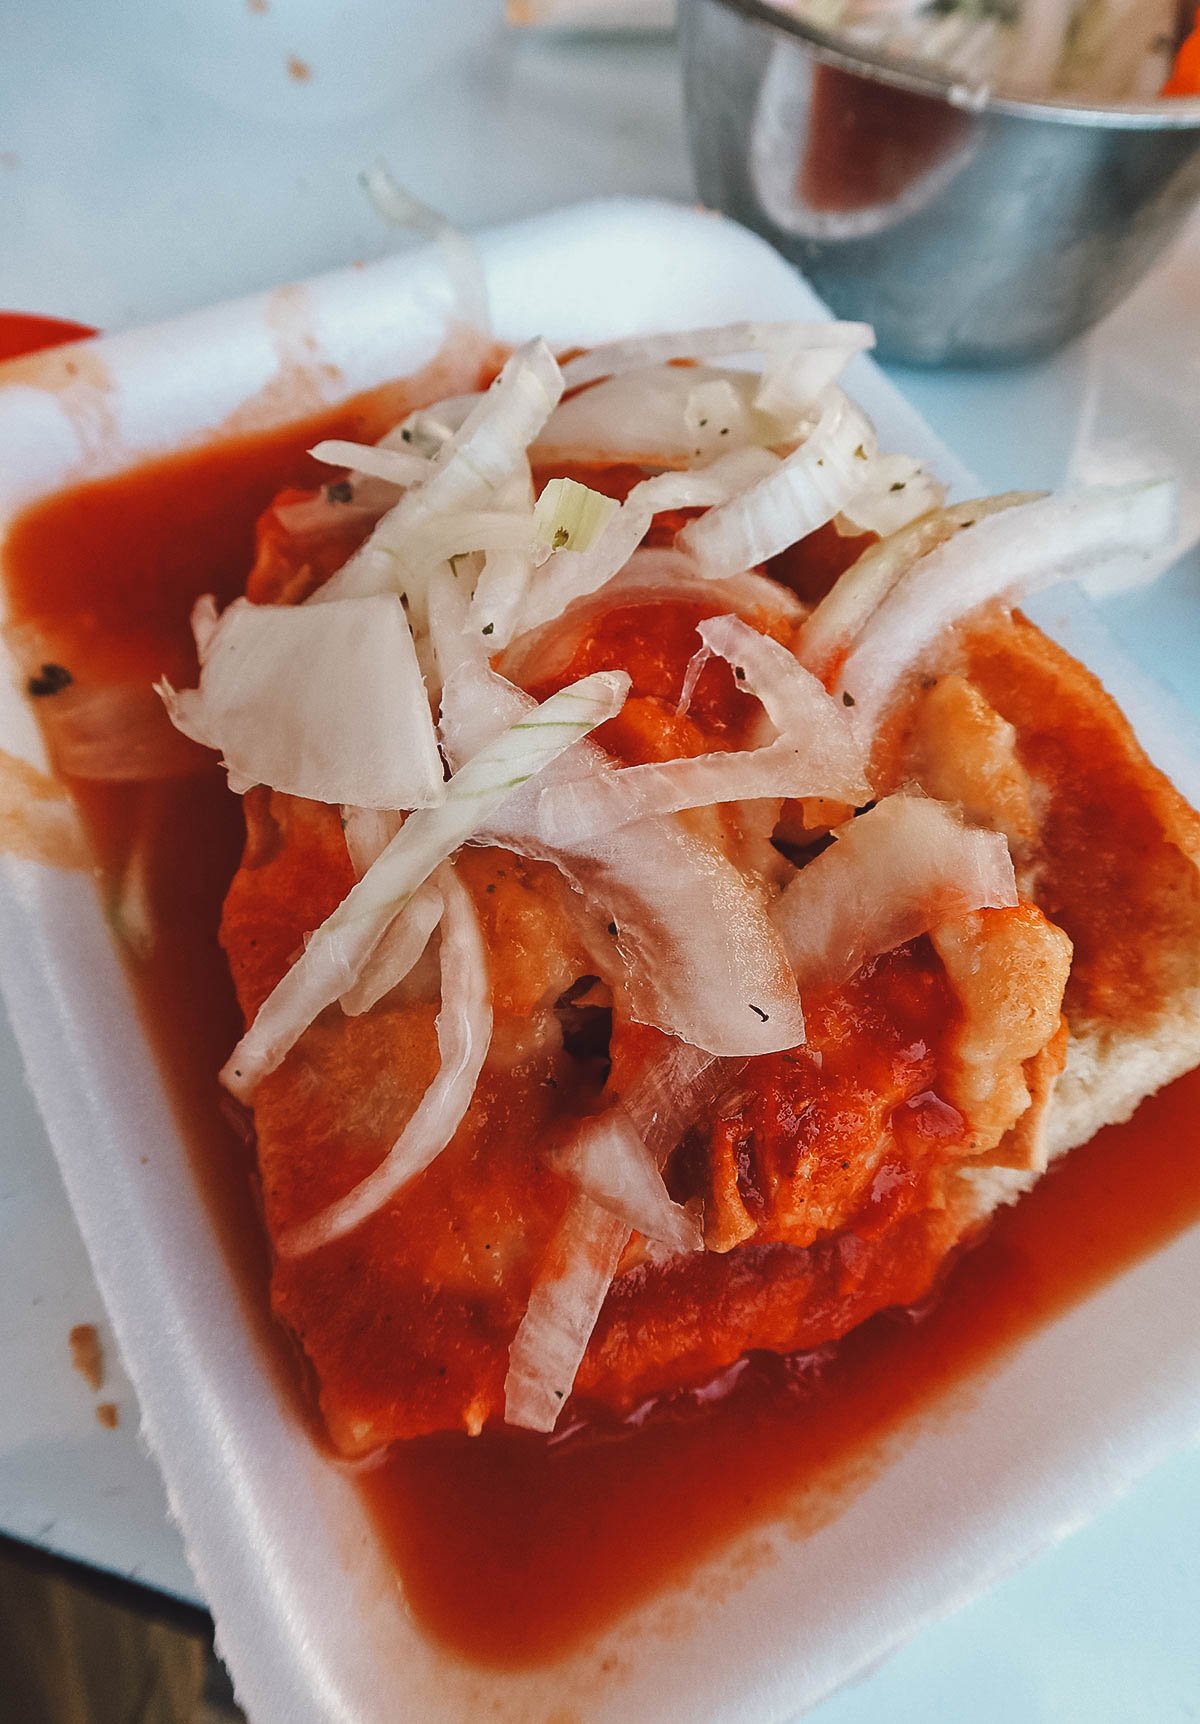 Torta drowned in tomato and chili sauces at El Principe Heredero in Guadalajara